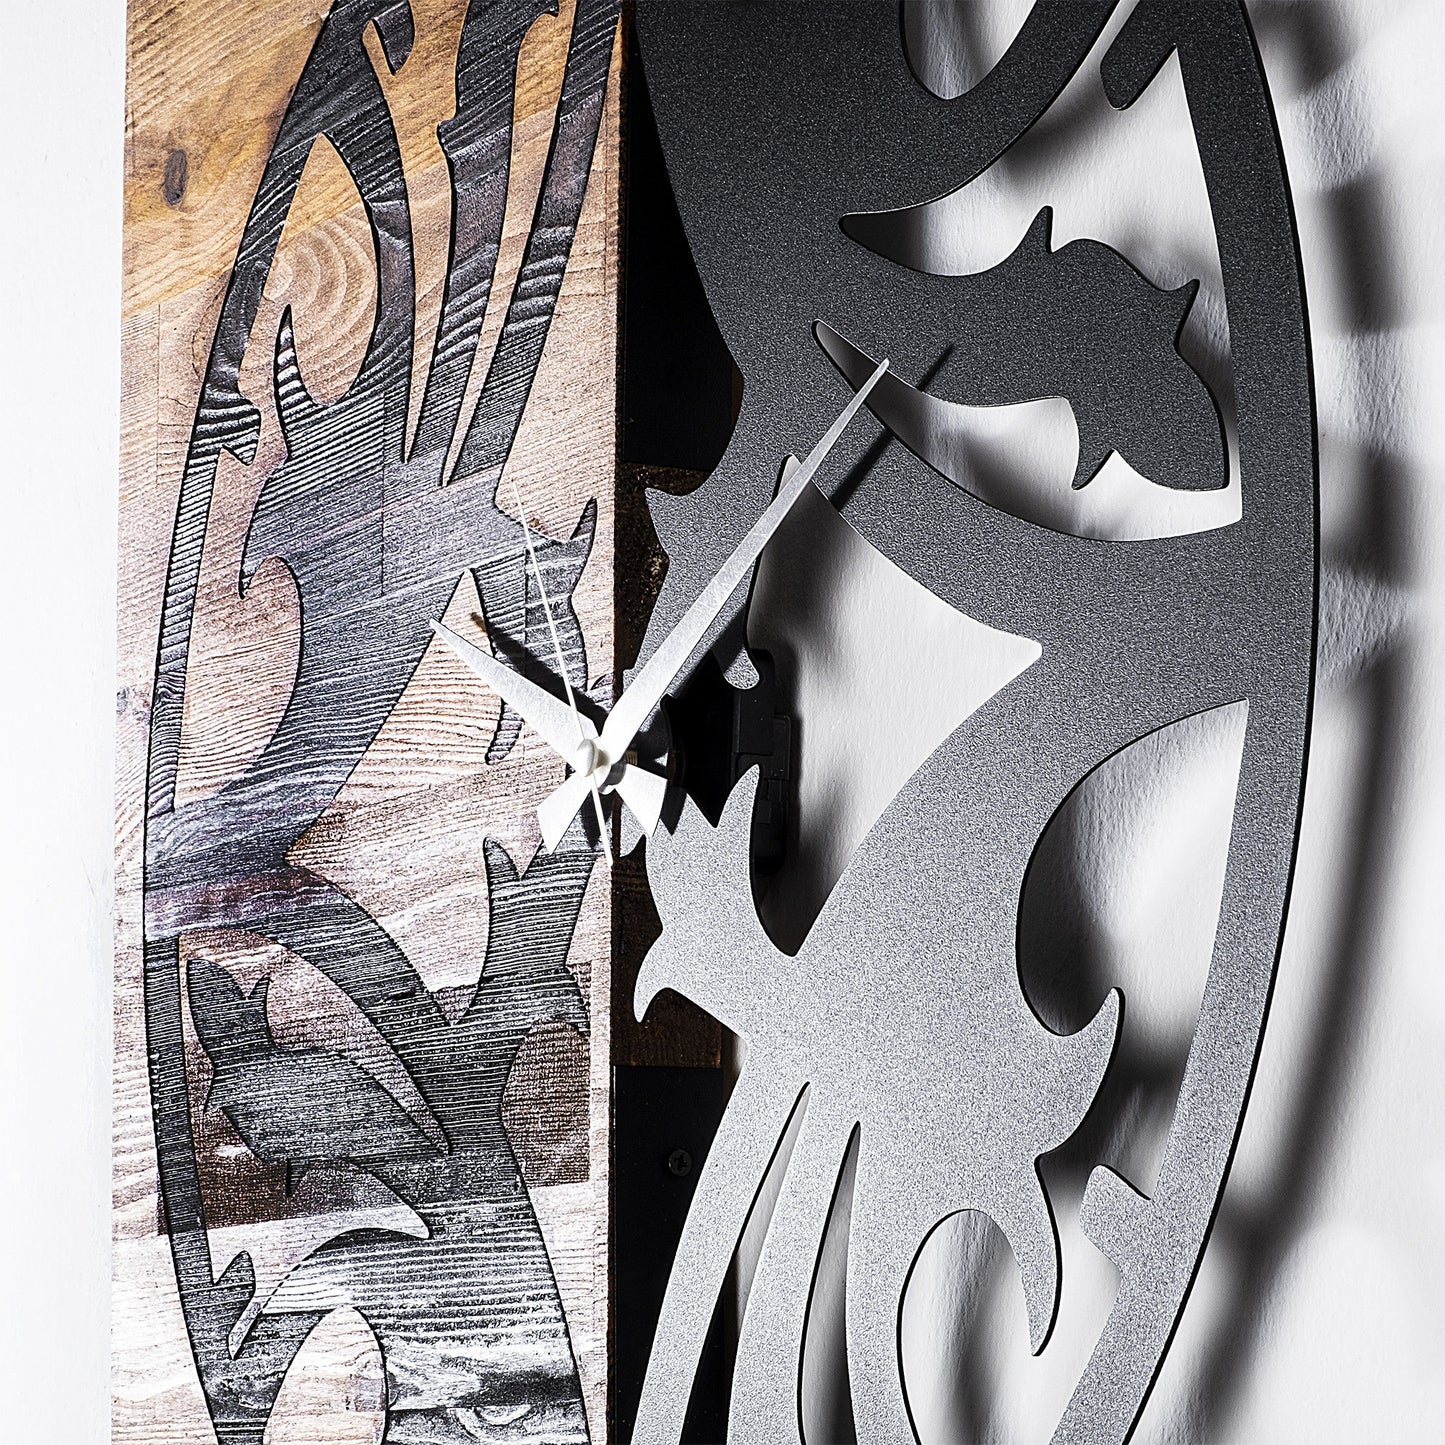 Wooden Clock 34 - Decorative Wooden Wall Clock